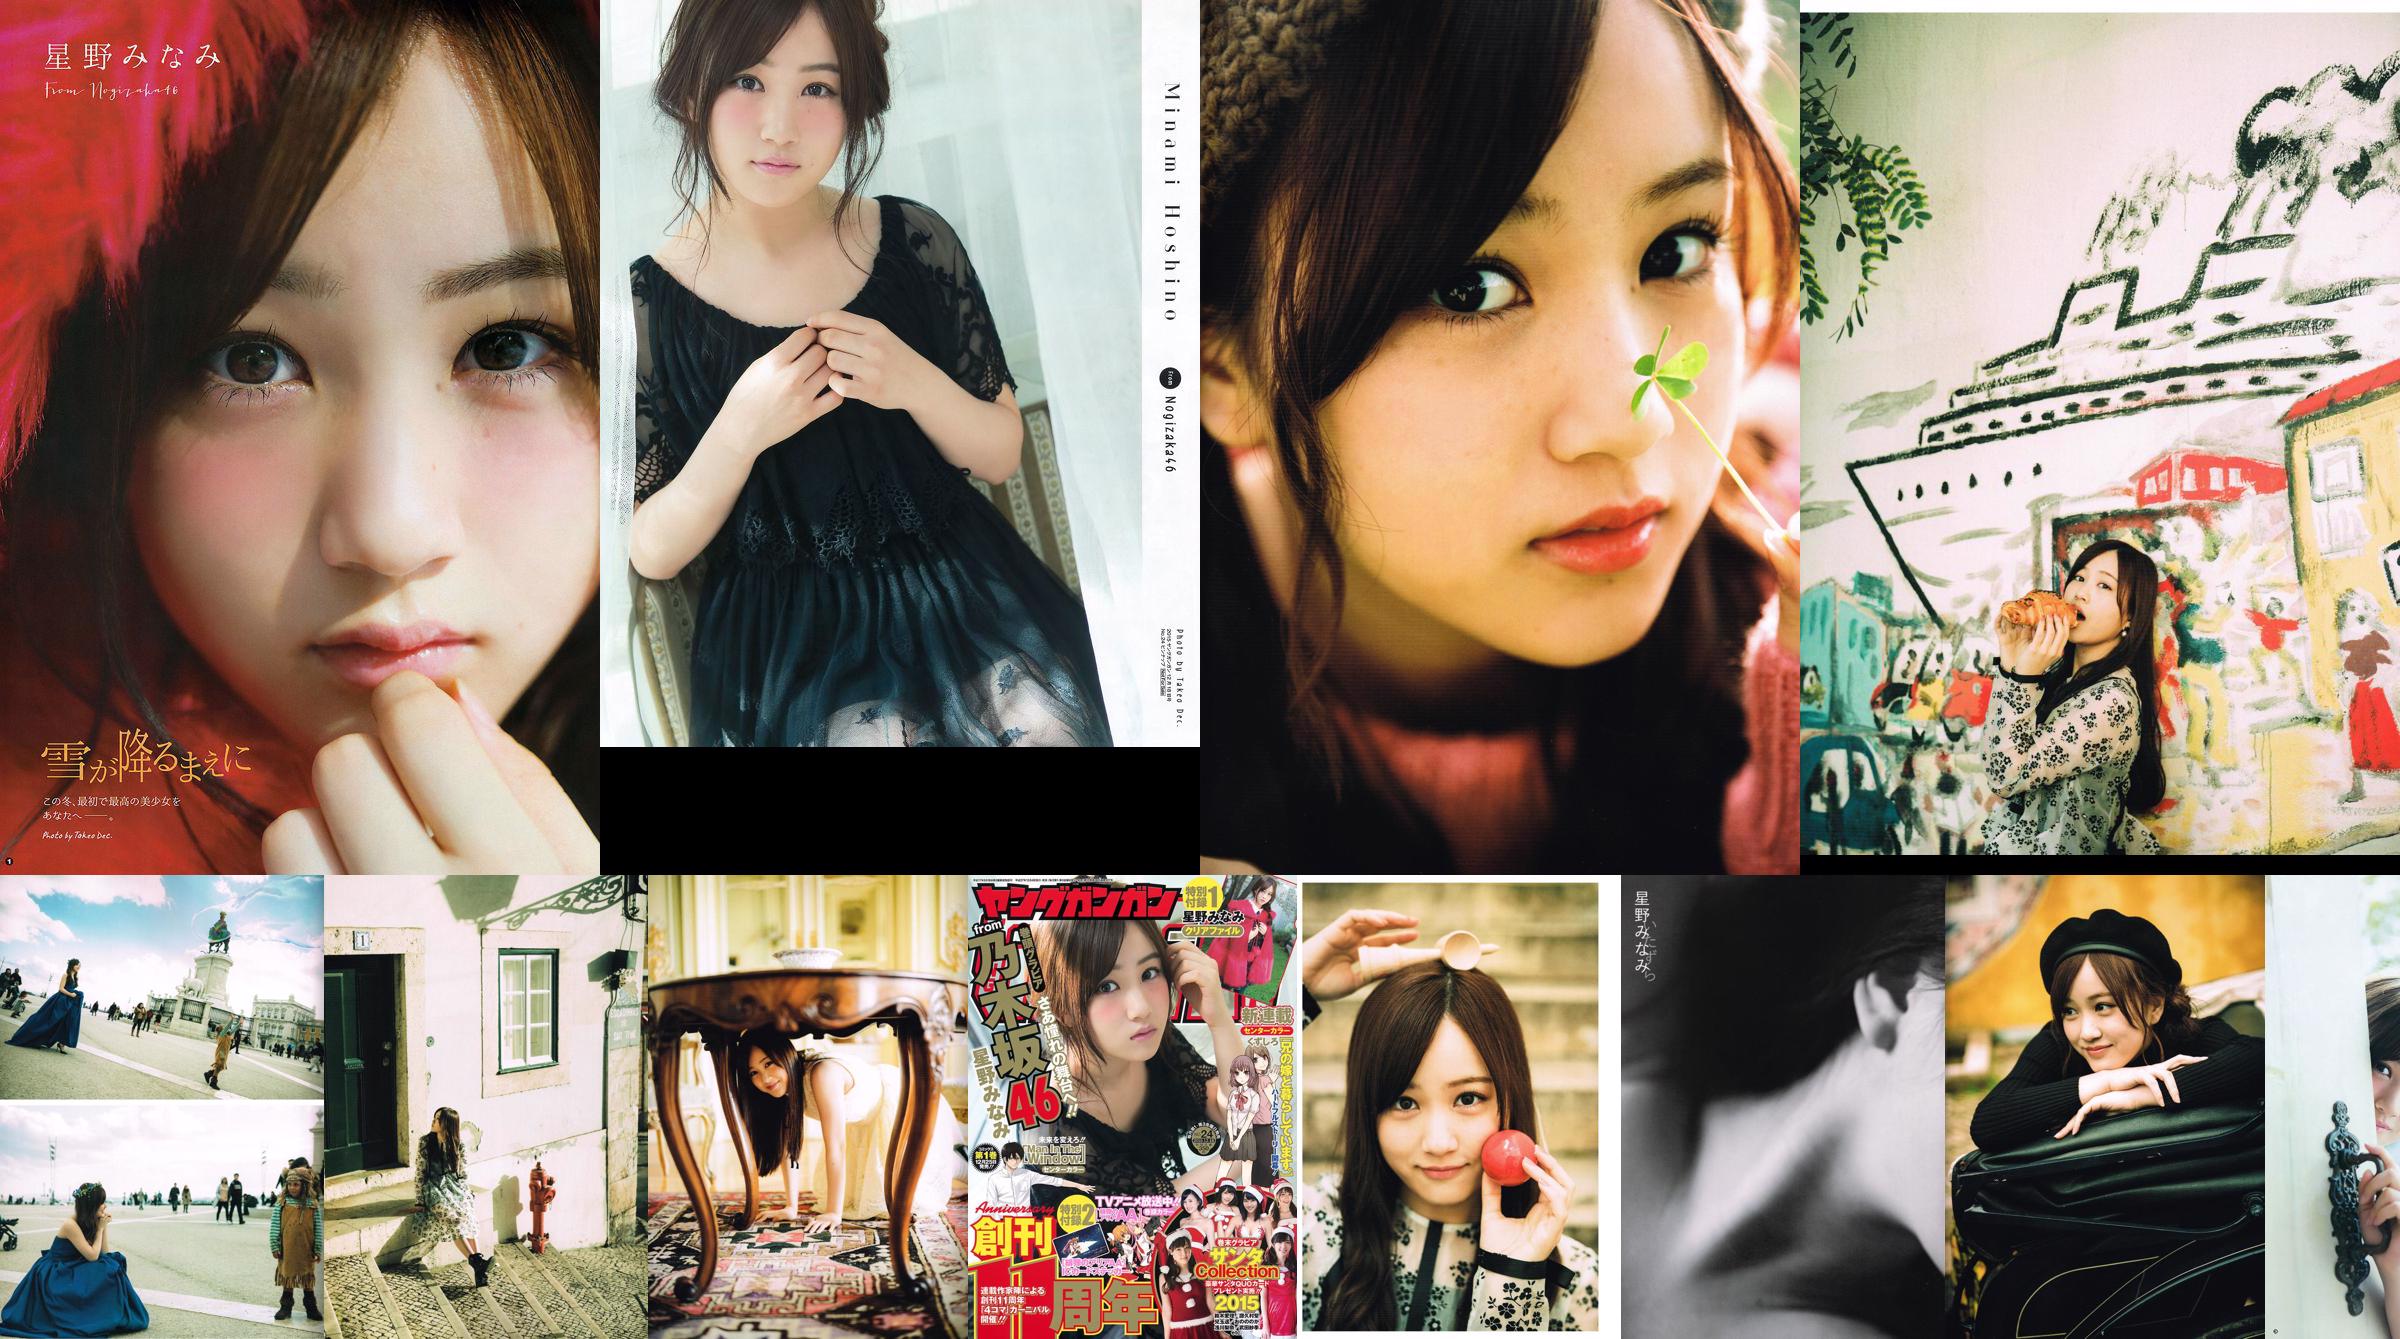 [Young Gangan] Minami Hoshino 2015 No.24 Photo Magazine No.1c7ed3 Page 1